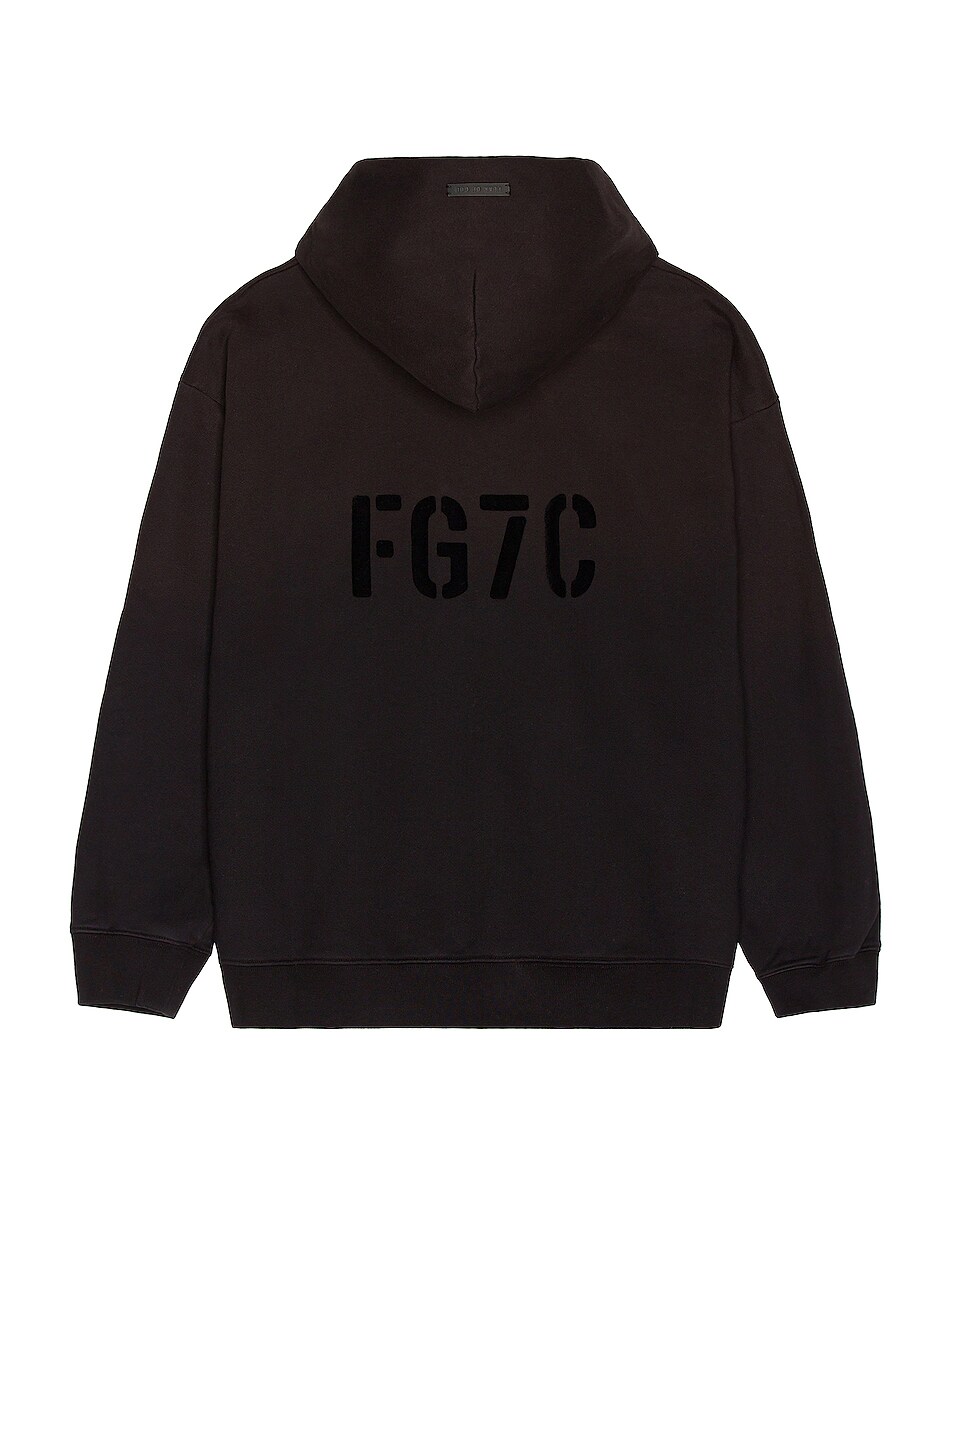 Image 1 of Fear of God FG7C Hoodie in Vintage Black